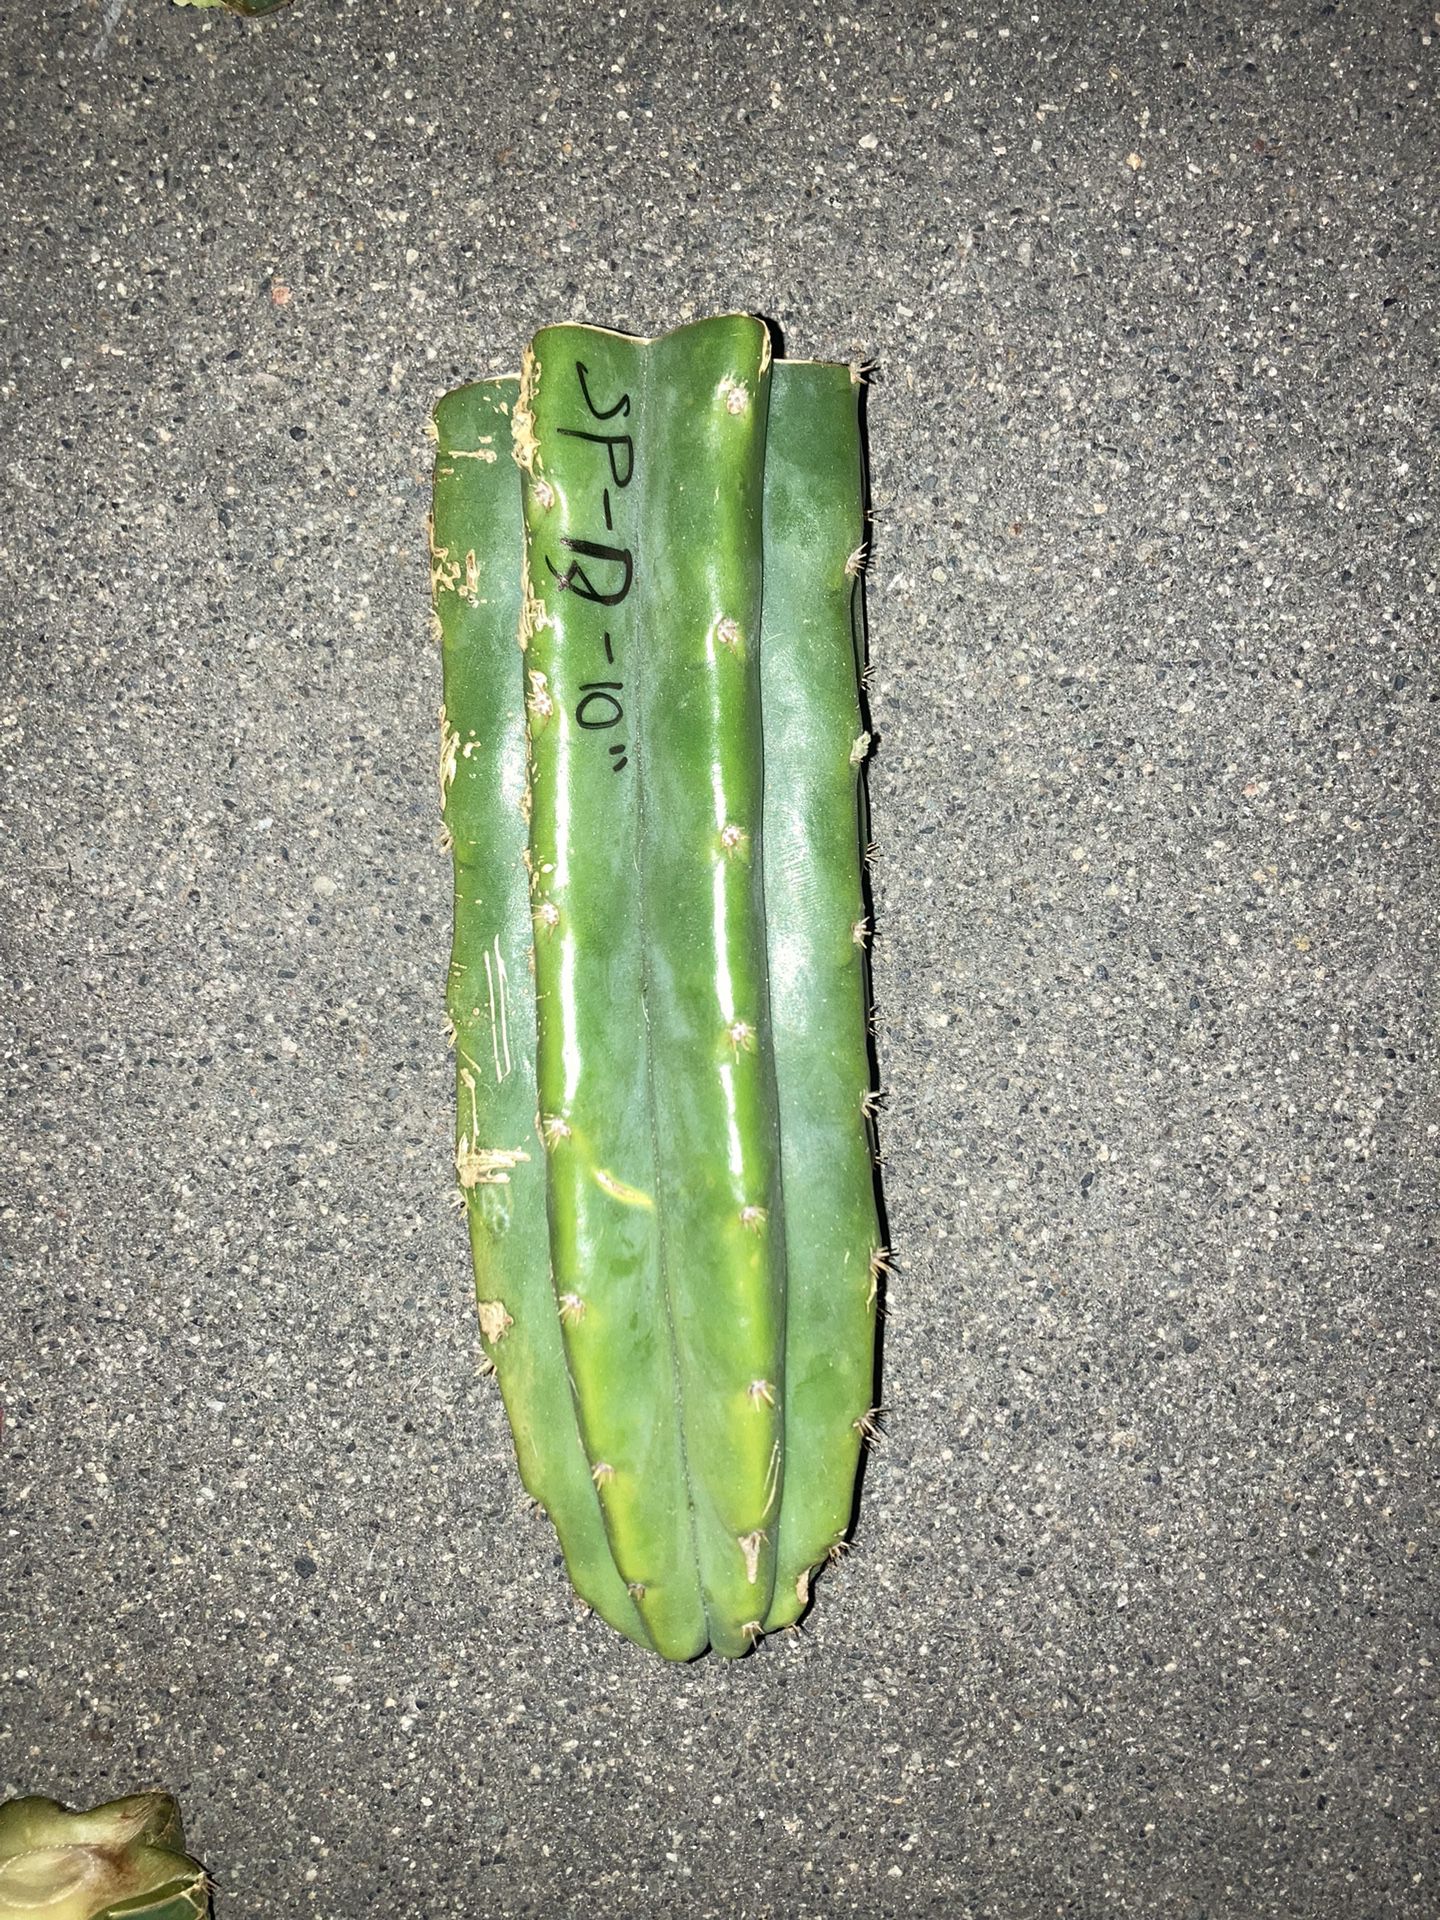 San Pedro Cactus 